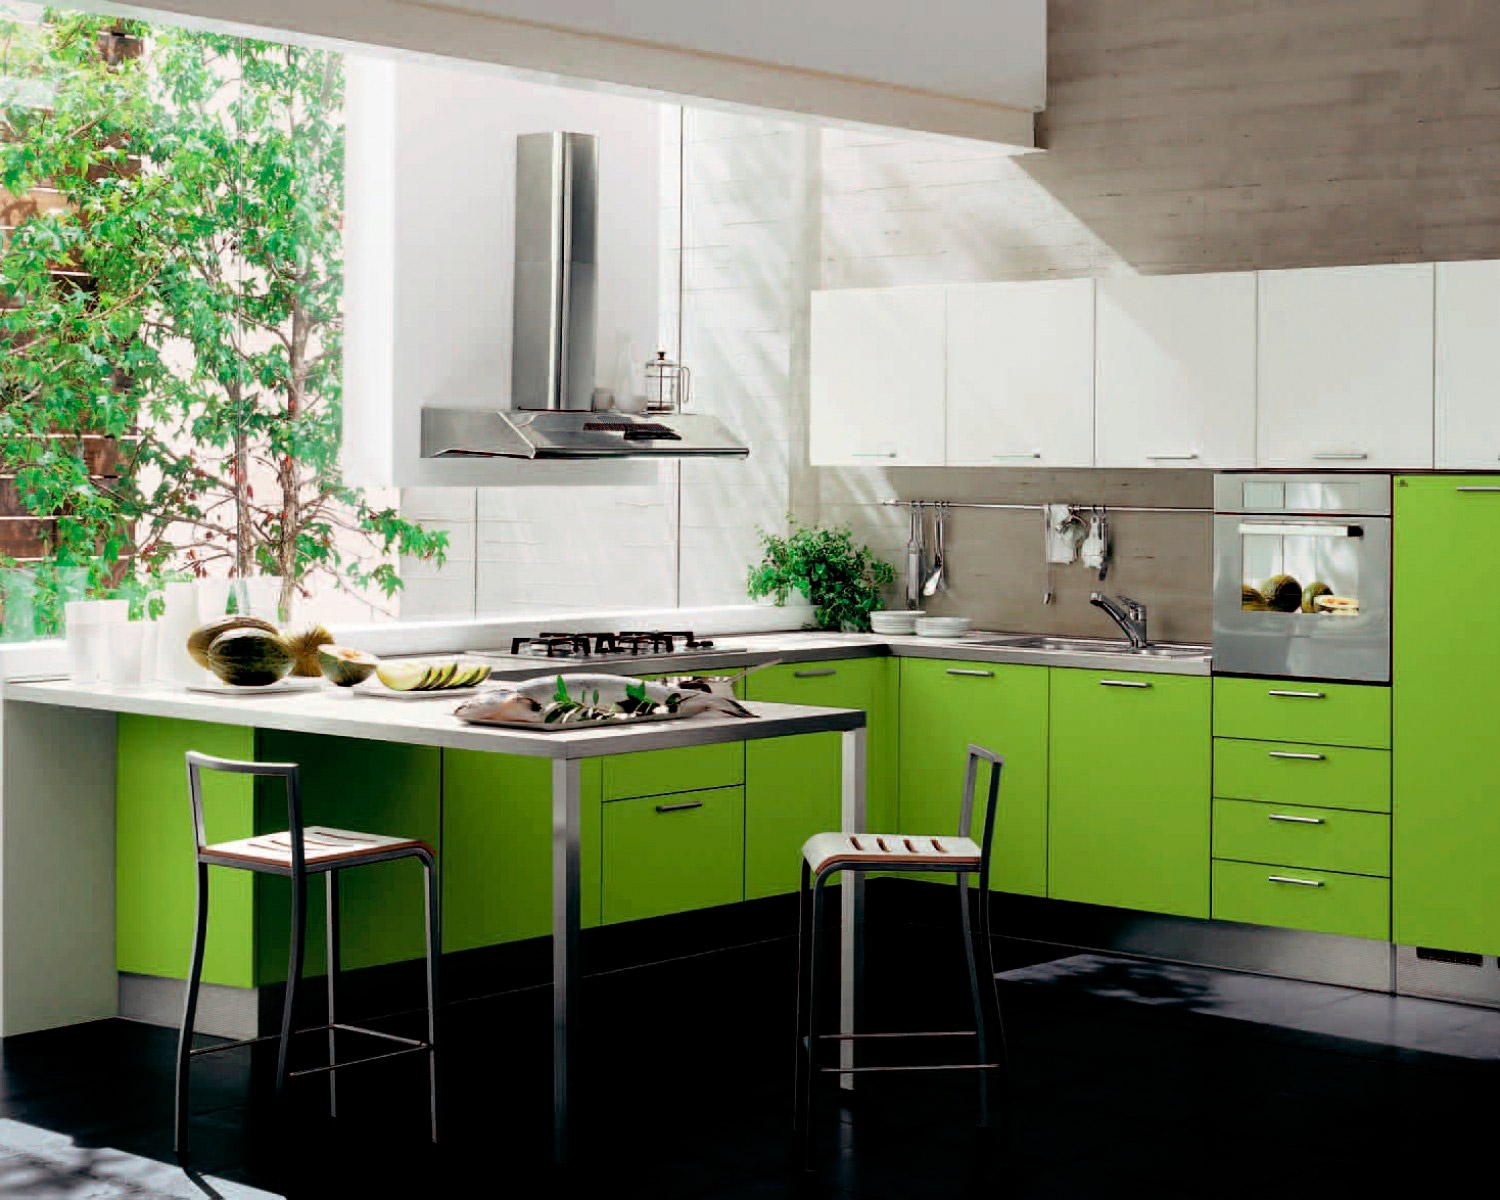 Green unit. Egger Фьорд зеленый кухня. Кухня зеленого цвета. Красивый кухонный гарнитур.